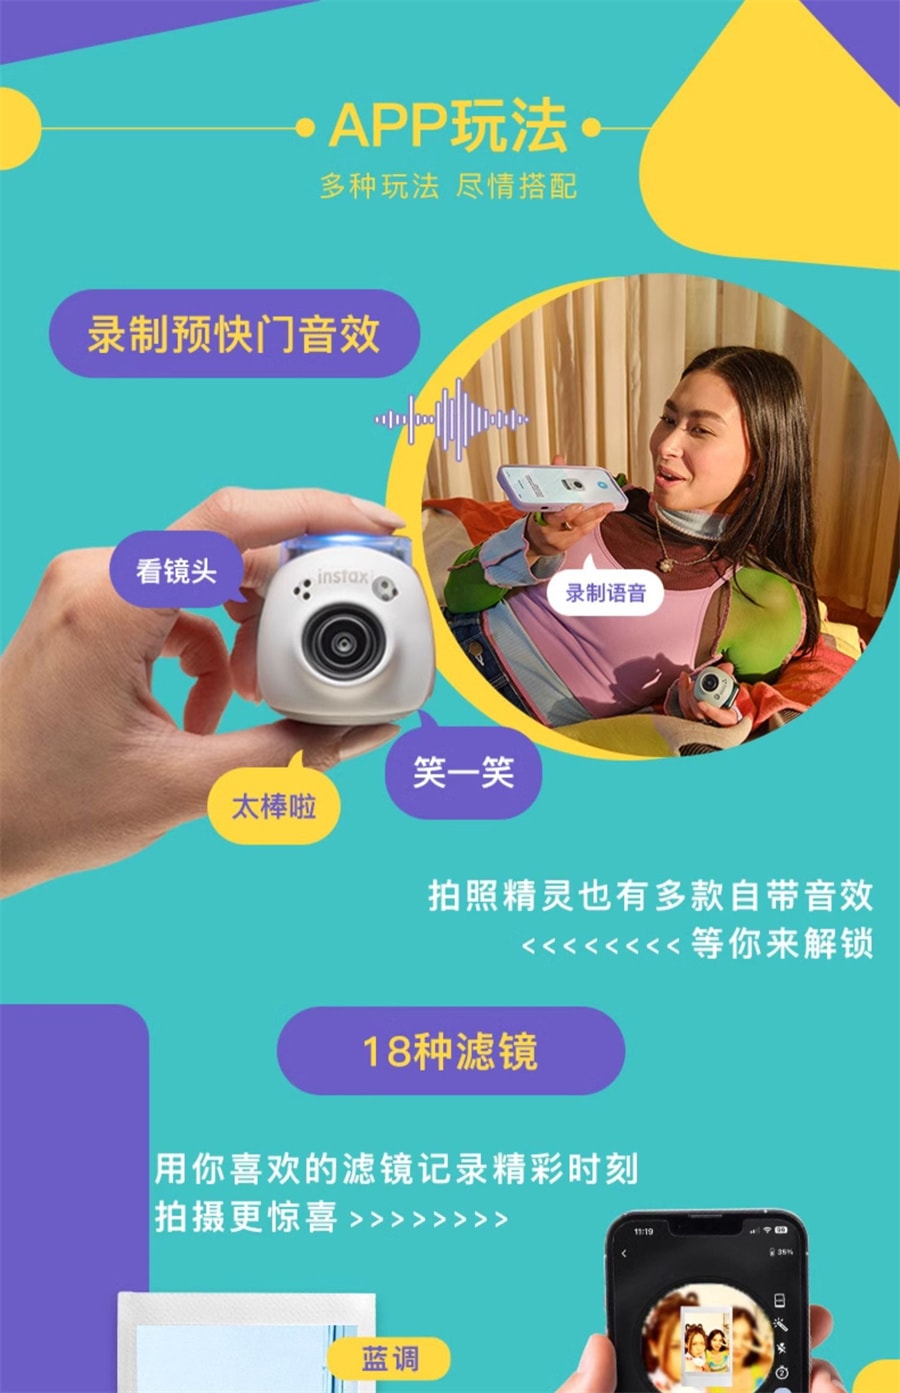 【中国直邮】Fujifilm/富士   instax Pal智能相机小巧便携迷你拍照精灵pal可爱  绅士黑官方标配